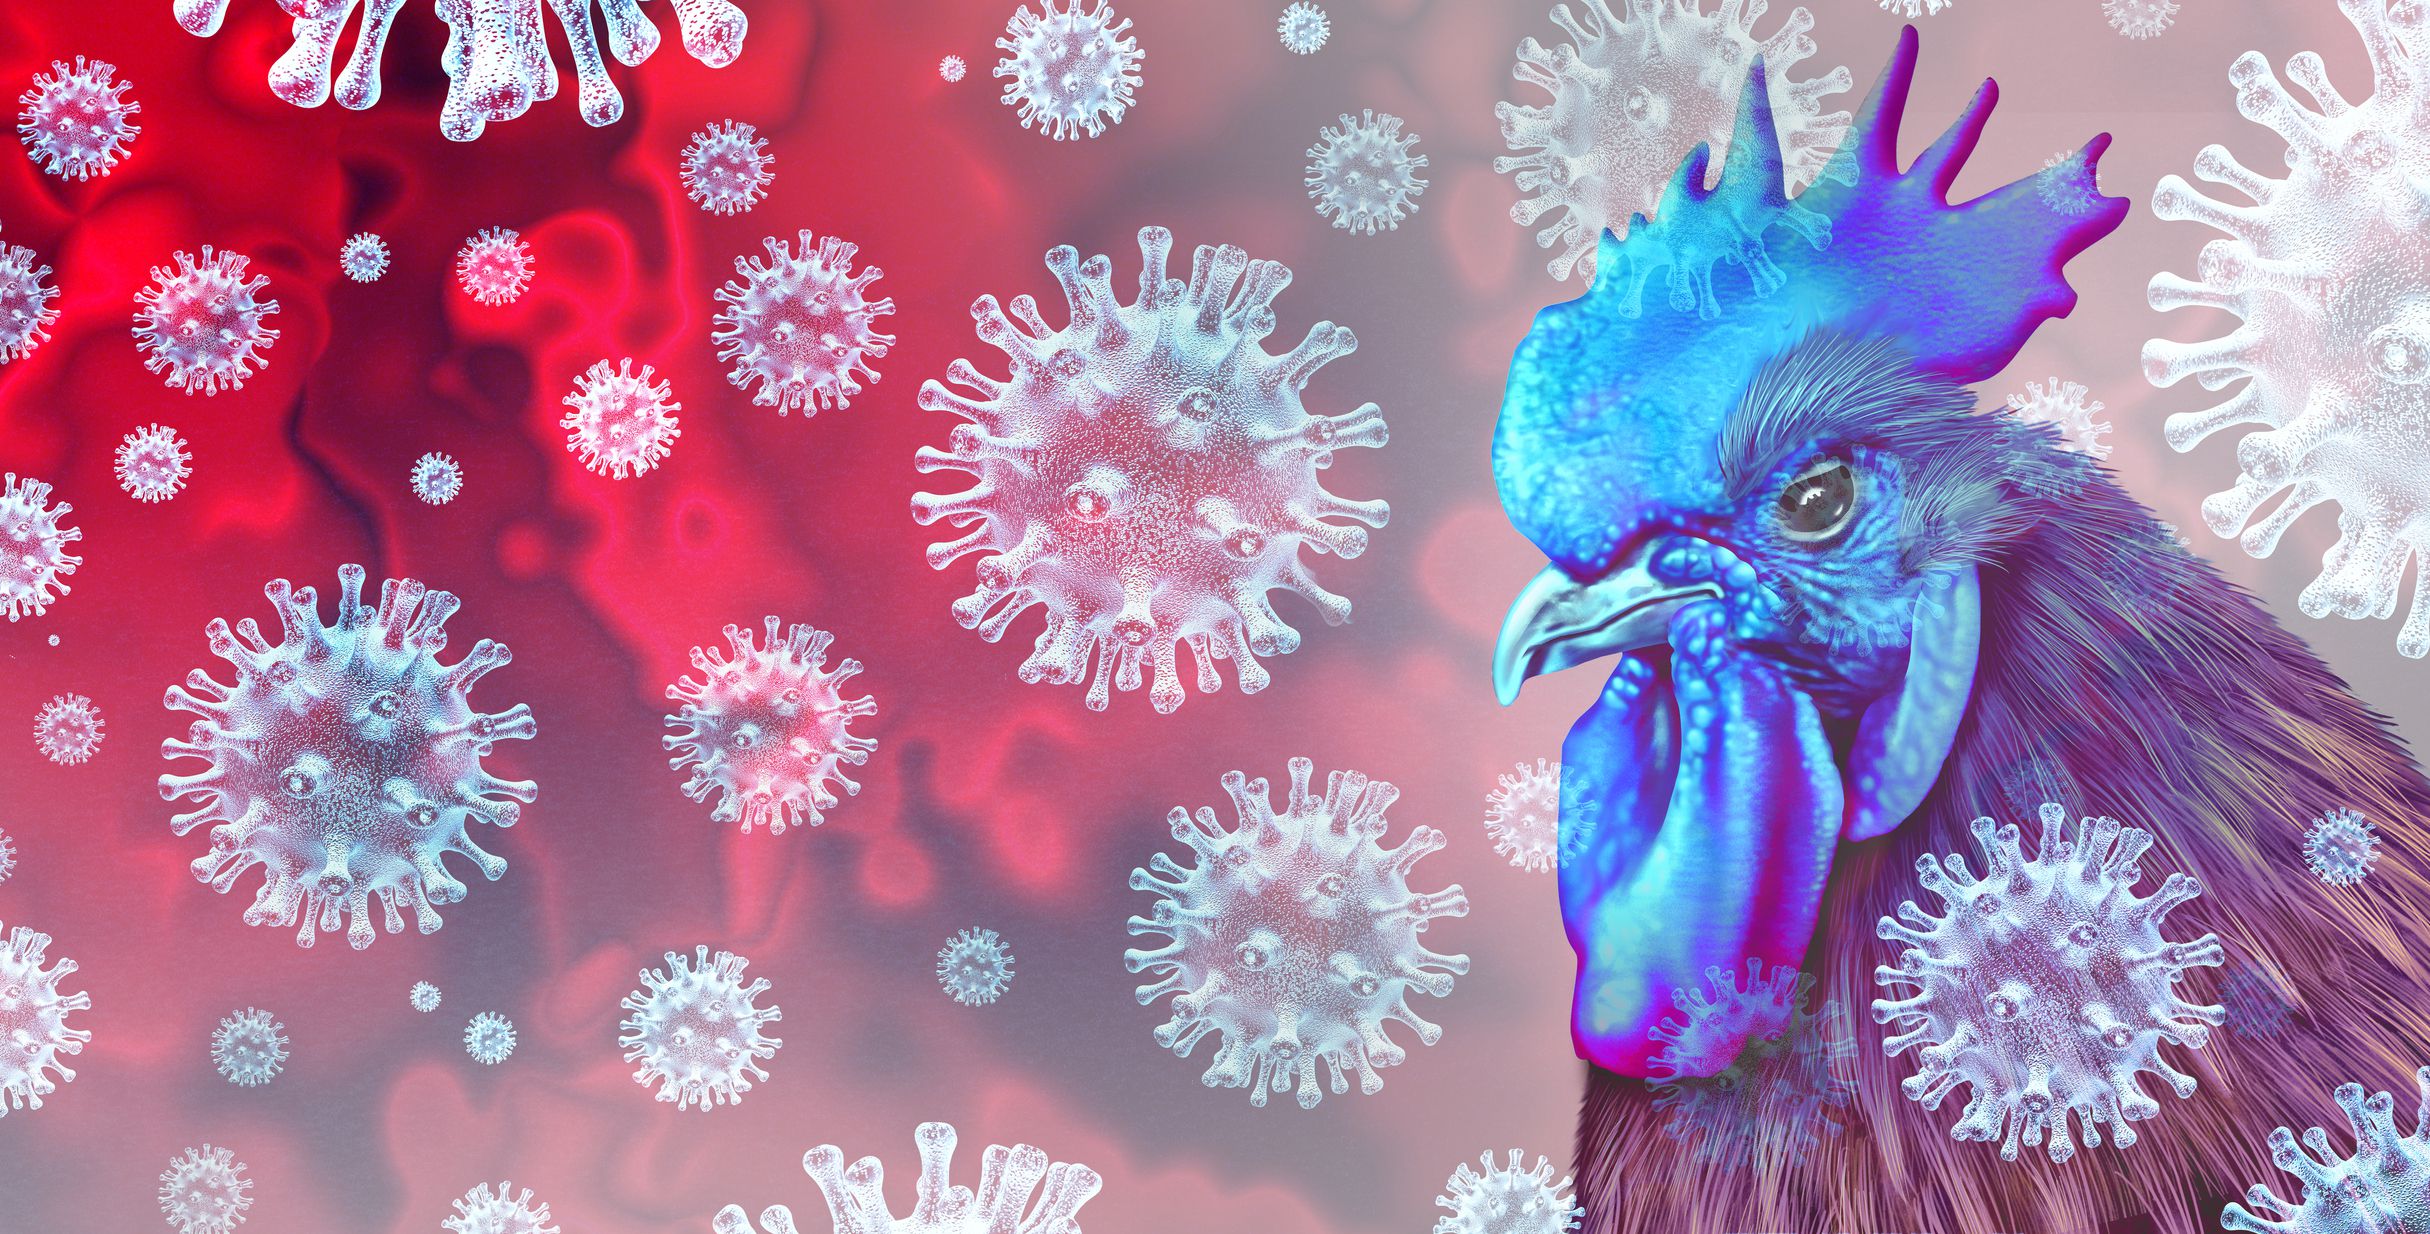 los casos humanos de gripe aviar son “una enorme preocupación”: oms